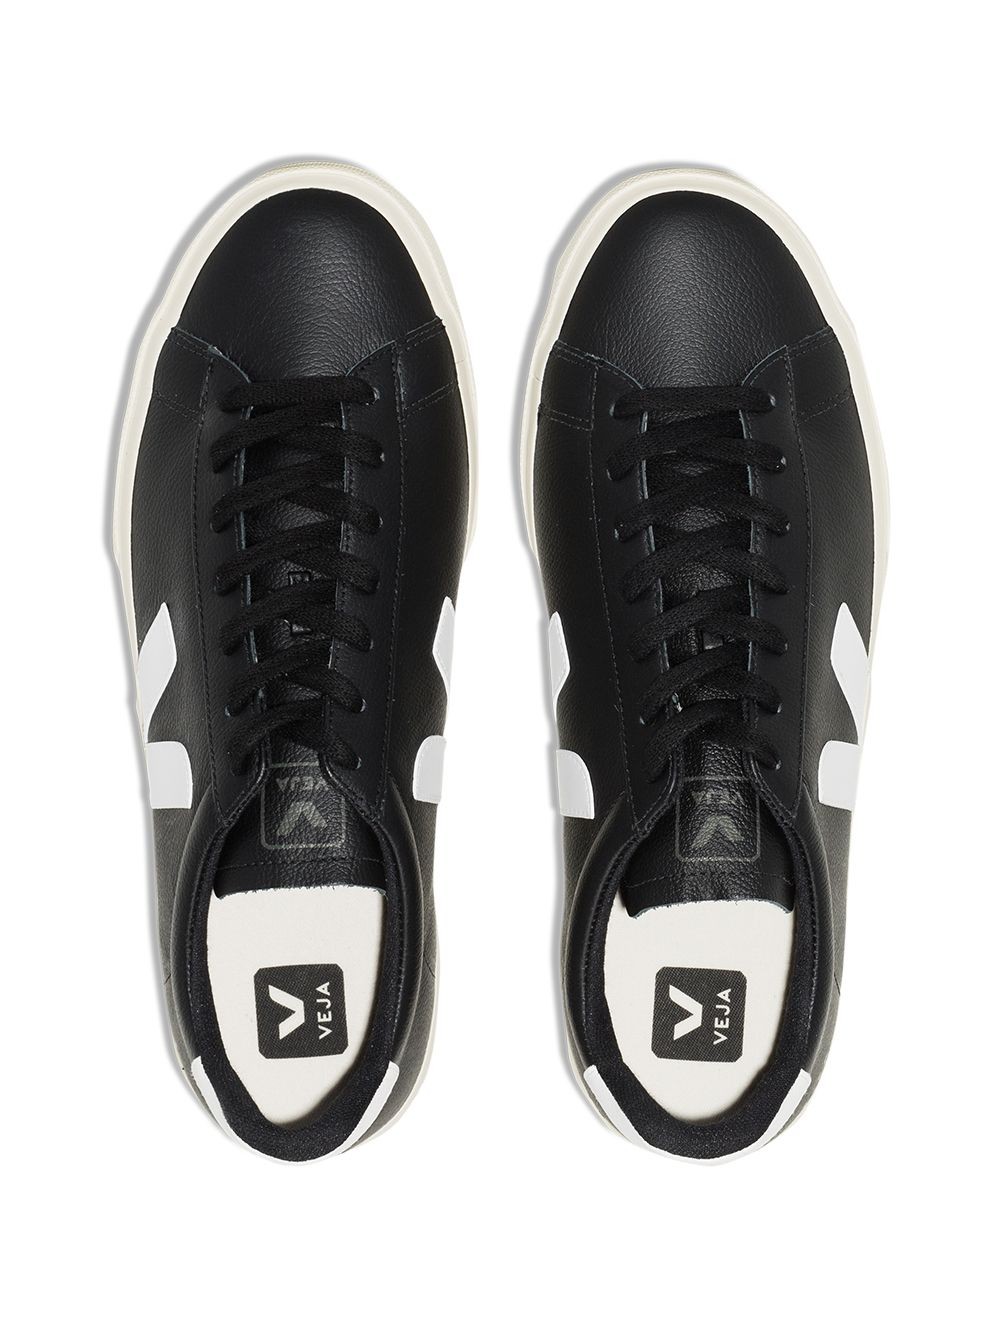 Veja Sneakers Campo Chromefree CPM051215 BLACK WHITE - Nuova Collezione Primavera Estate 2021